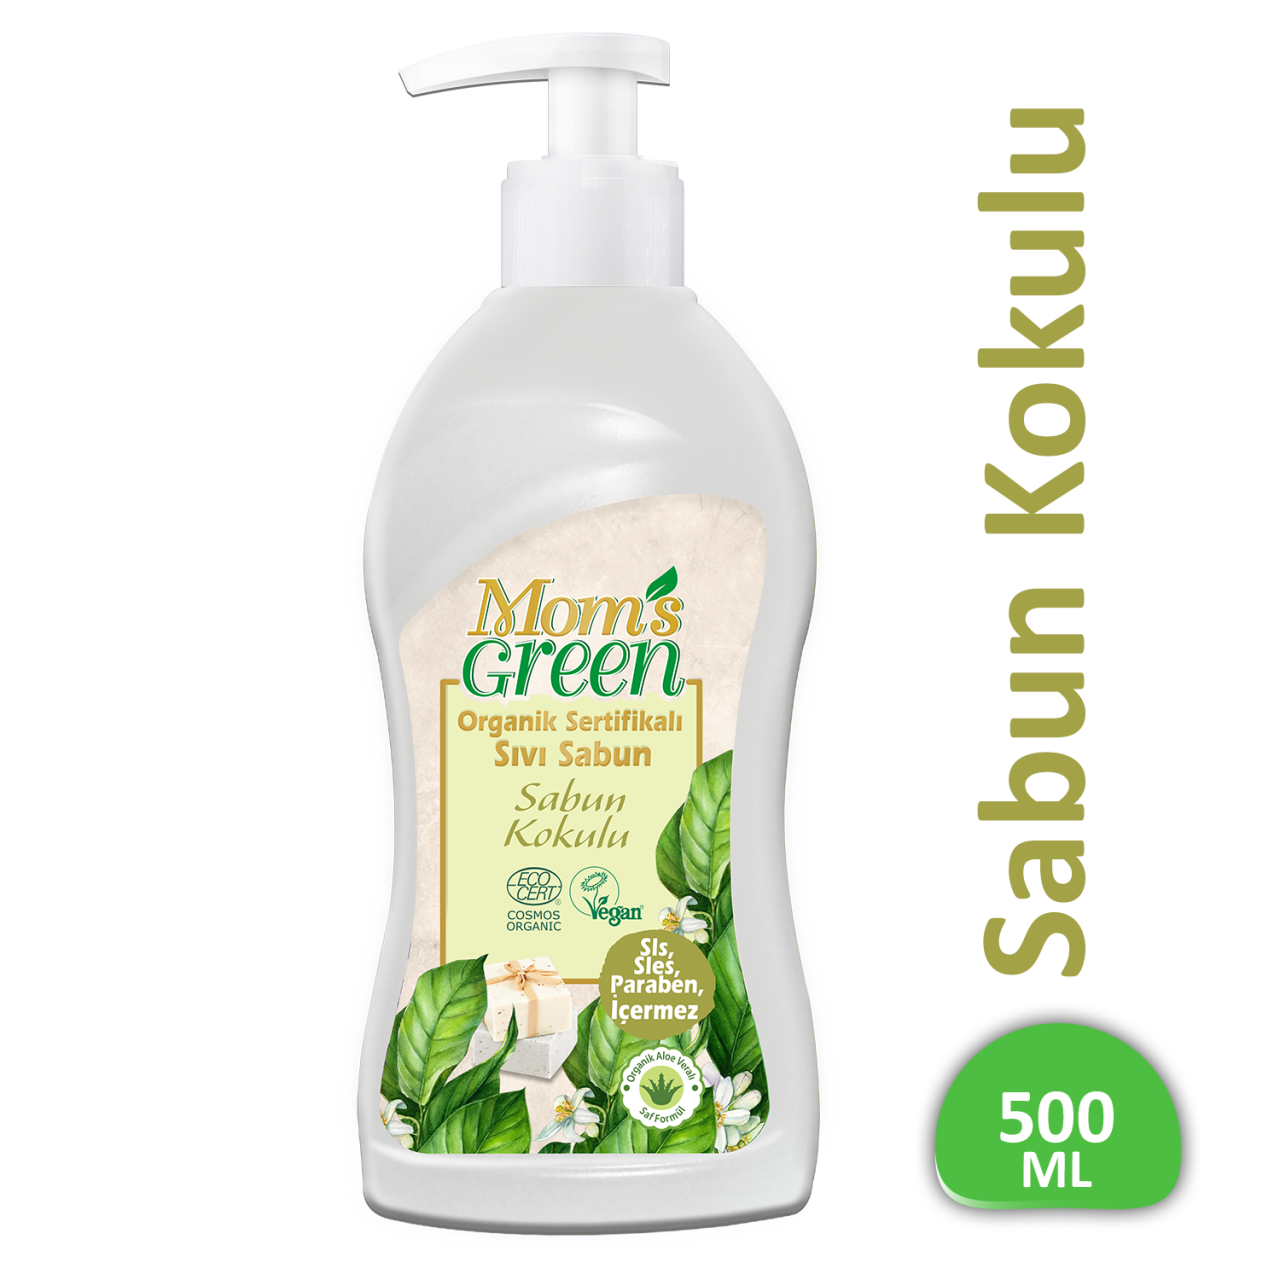 Mom's Green Organik Sertifikalı Sıvı Sabun - Sabun Kokulu  500 ml EcoCosmos